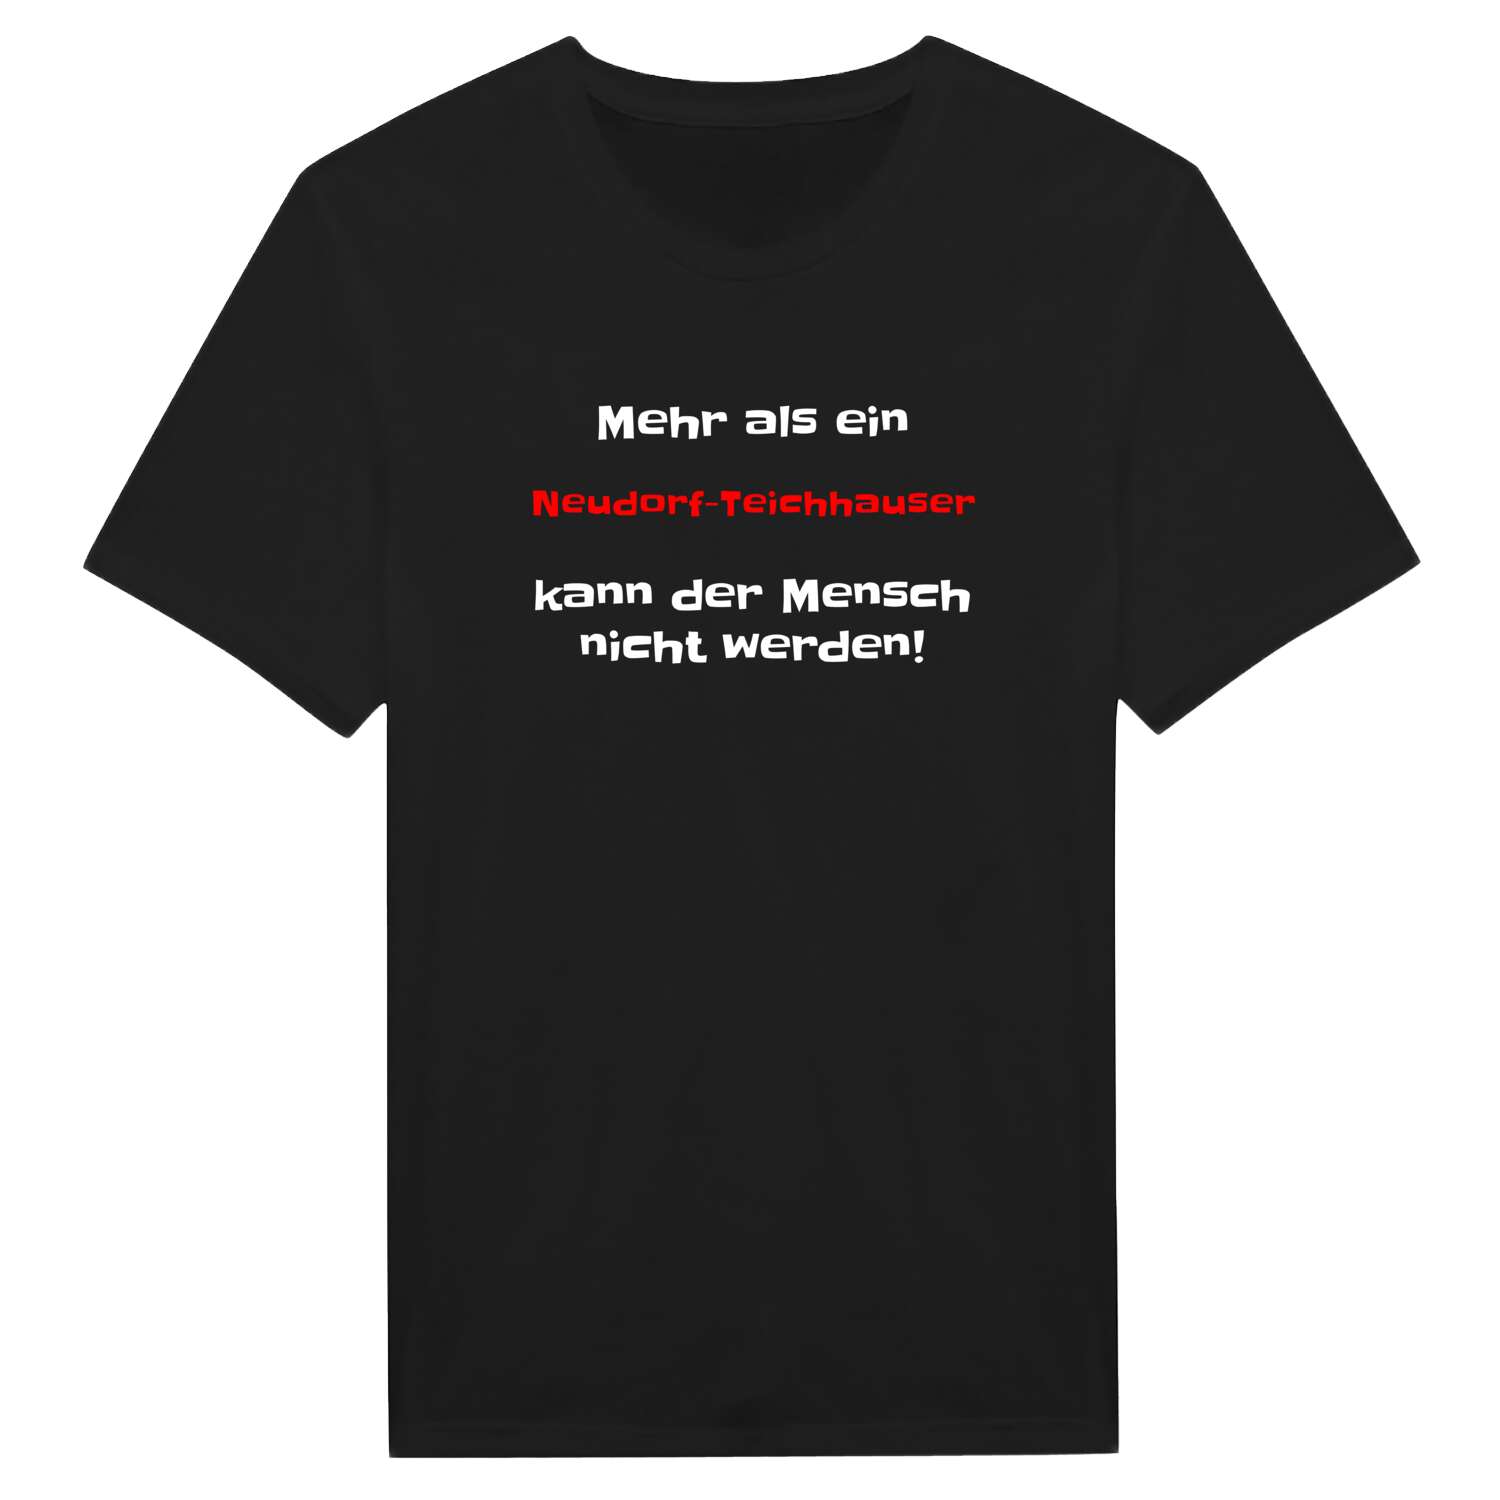 Neudorf-Teichhaus T-Shirt »Mehr als ein«